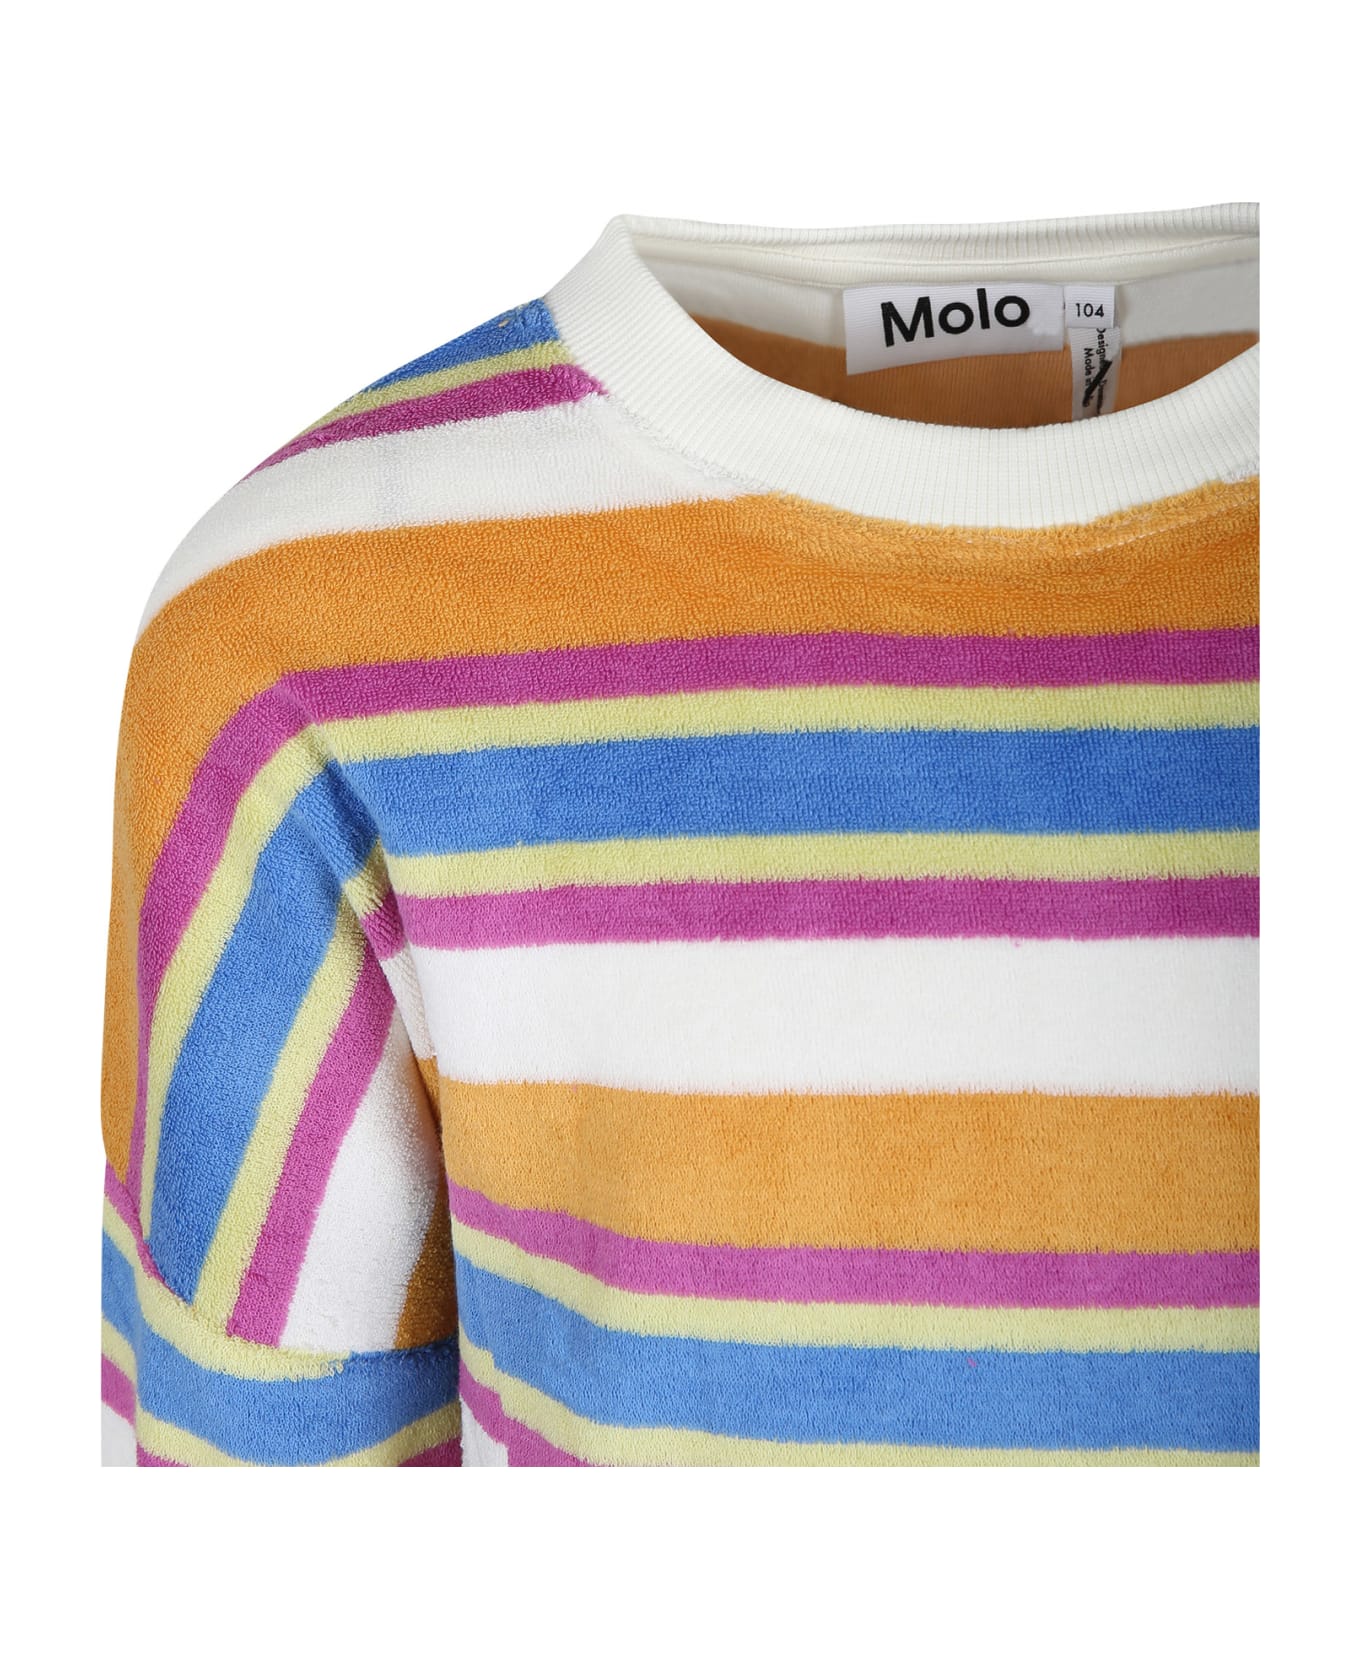 Molo Multicolor Sweatshirt For Girl - Multicolor